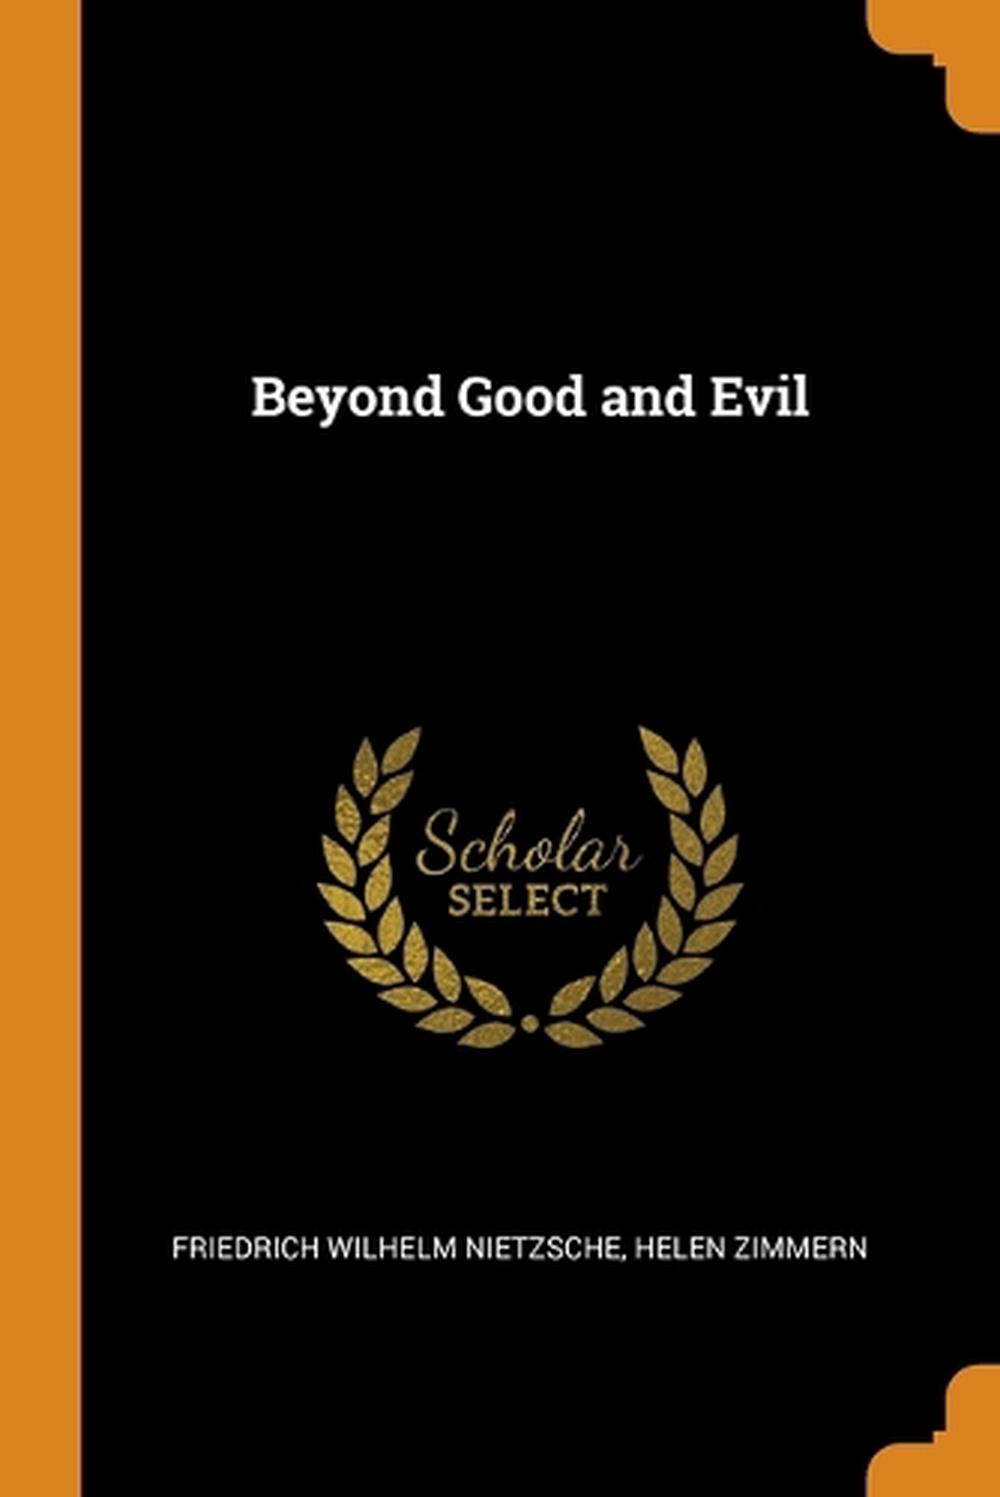 beyond good & evil by friedrich nietzsche